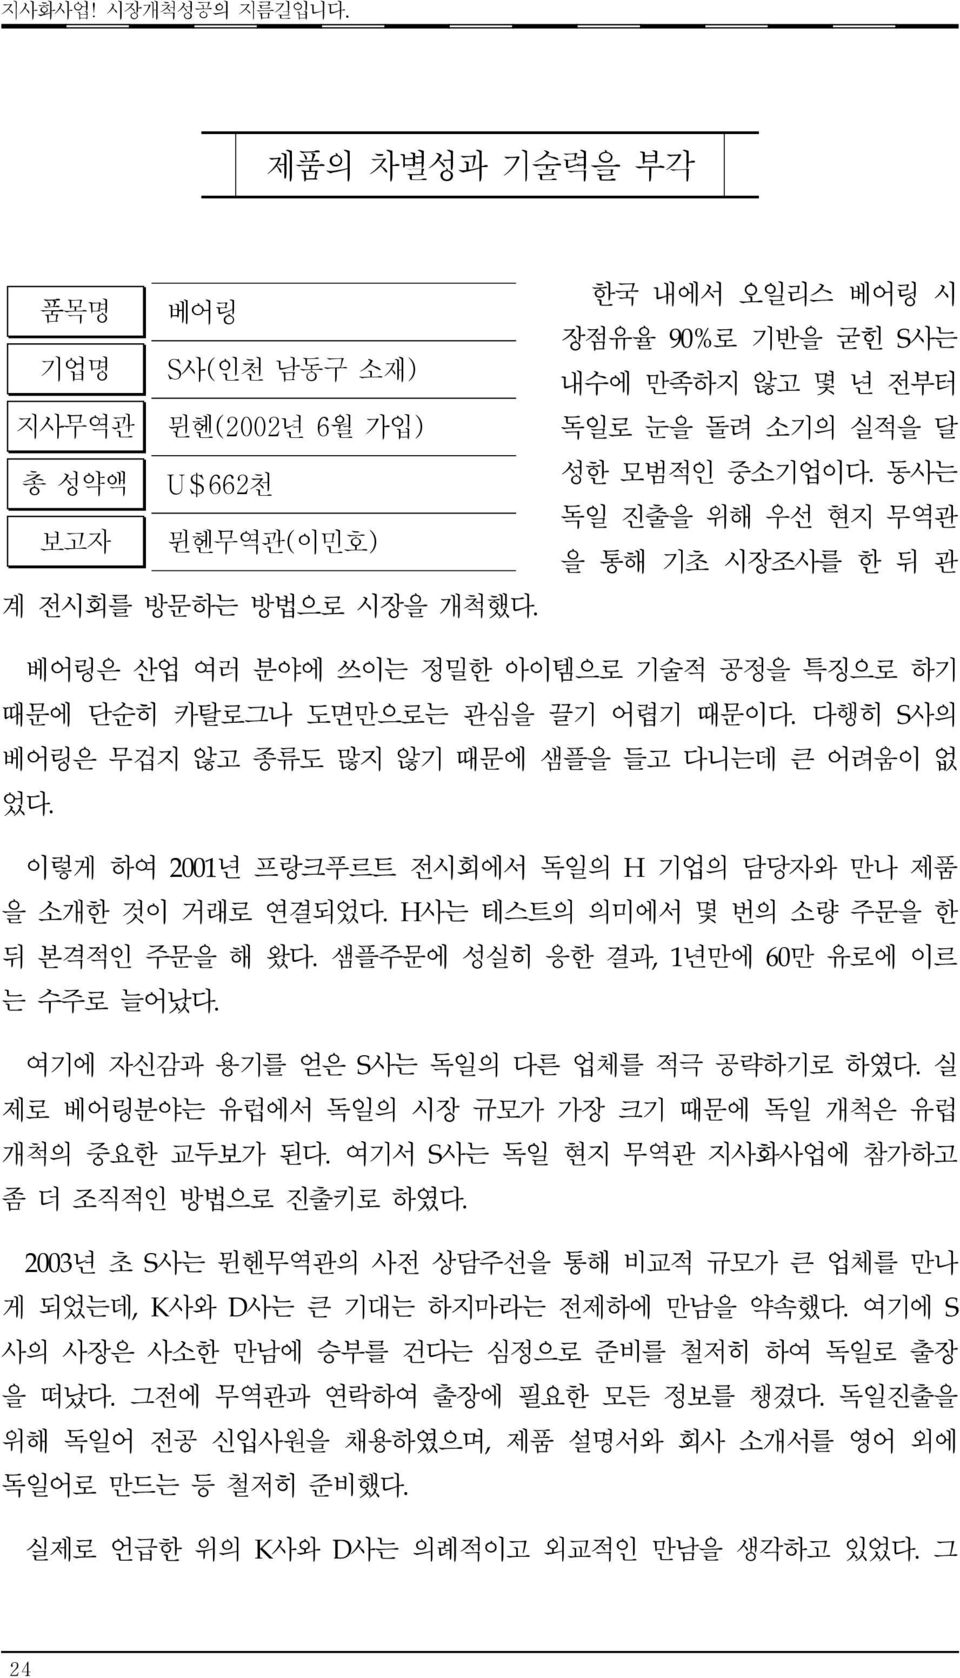 지사무역관 품목명 총 품목명 성약액 보고자 품목명 베어링